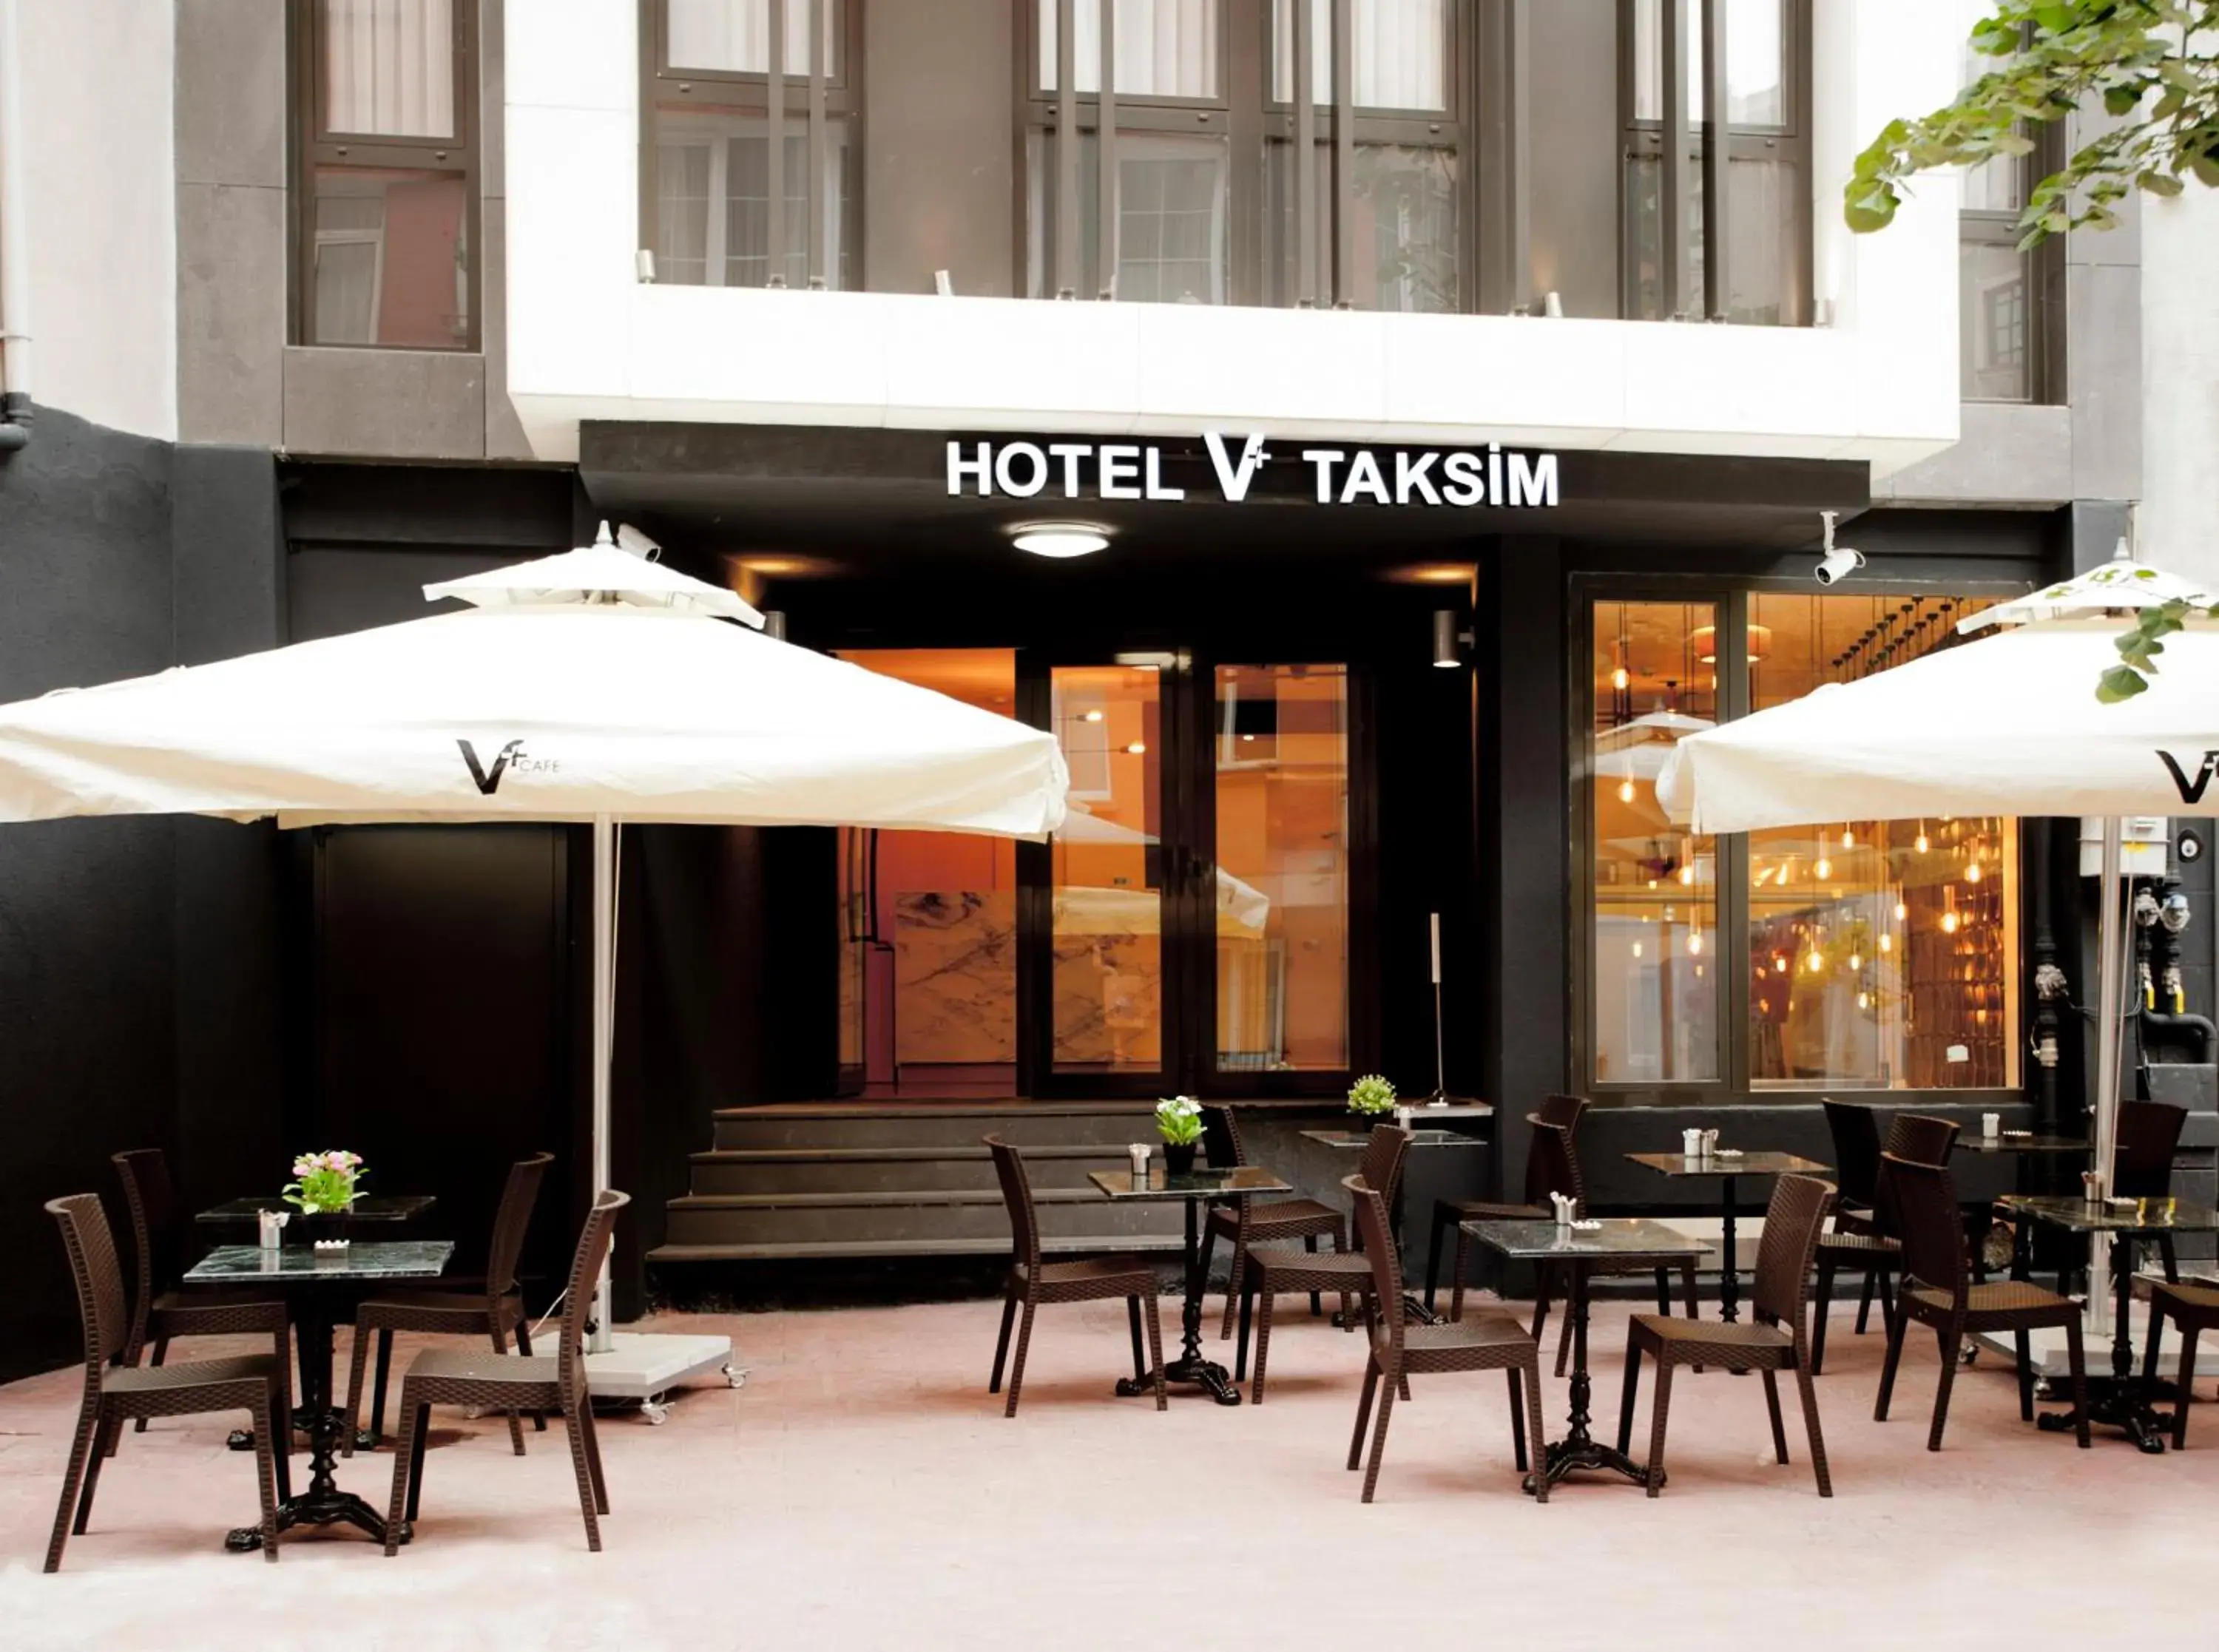 Facade/entrance in Hotel V Plus Taksim